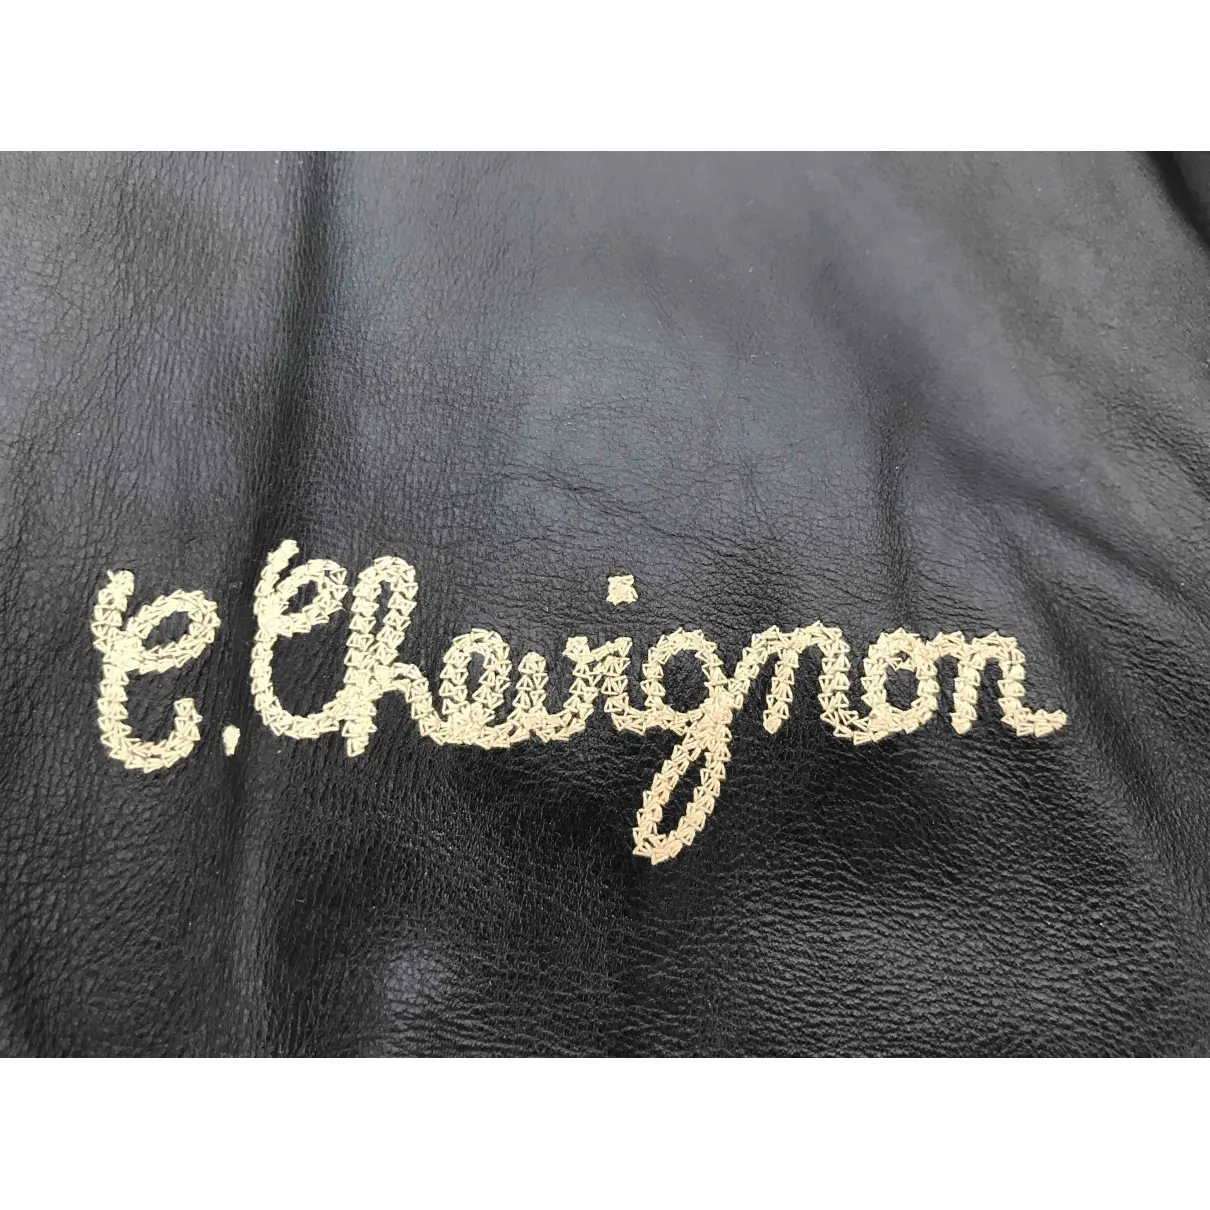 Chevignon Leather jacket for sale - Vintage